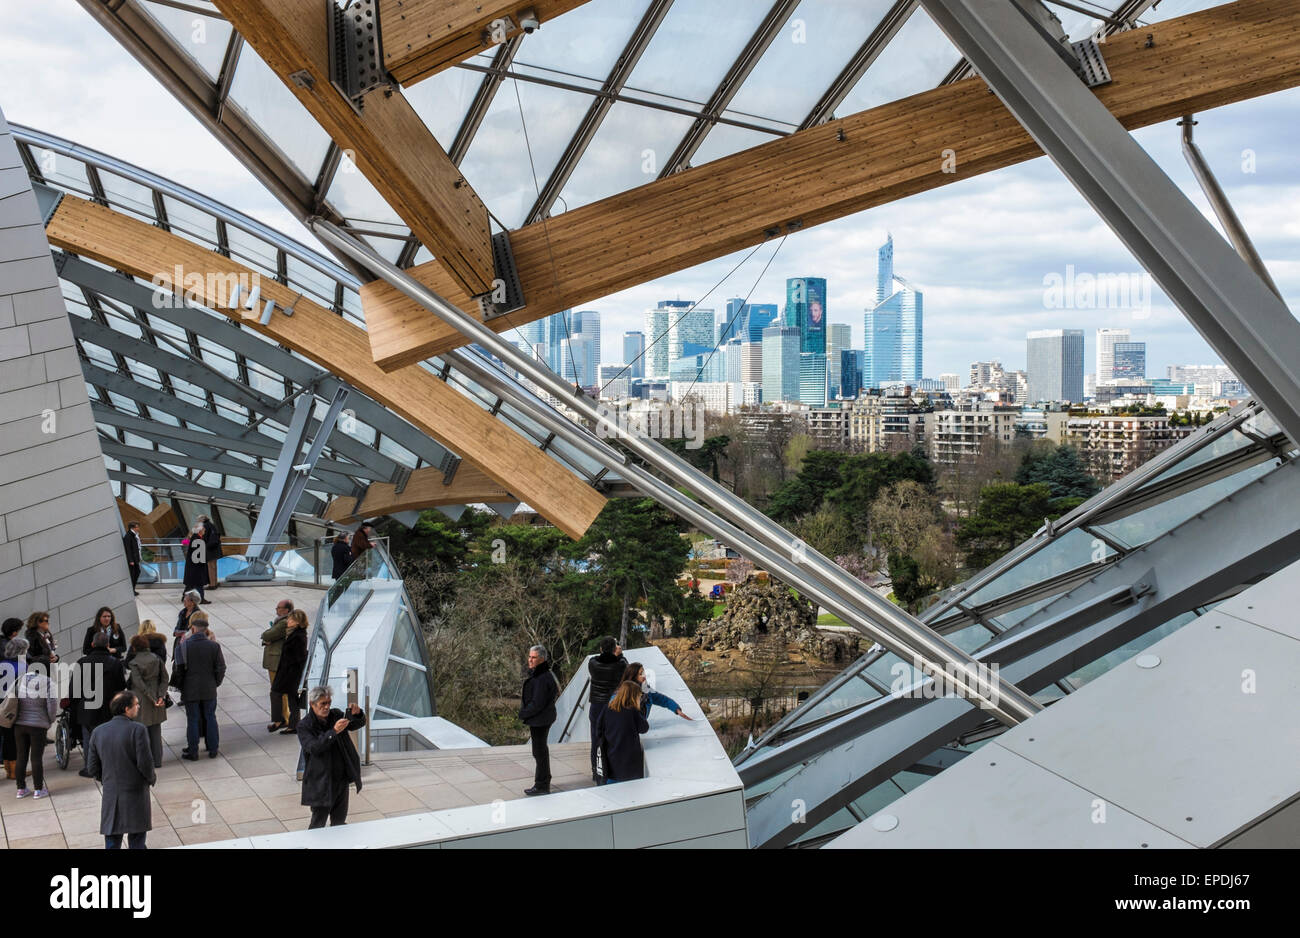 Fondazione Louis Vuitton galleria d'arte moderna di Parigi. Vista di Parigi dalla terrazza sul tetto dell'edificio dall'architetto Frank Gehry Foto Stock